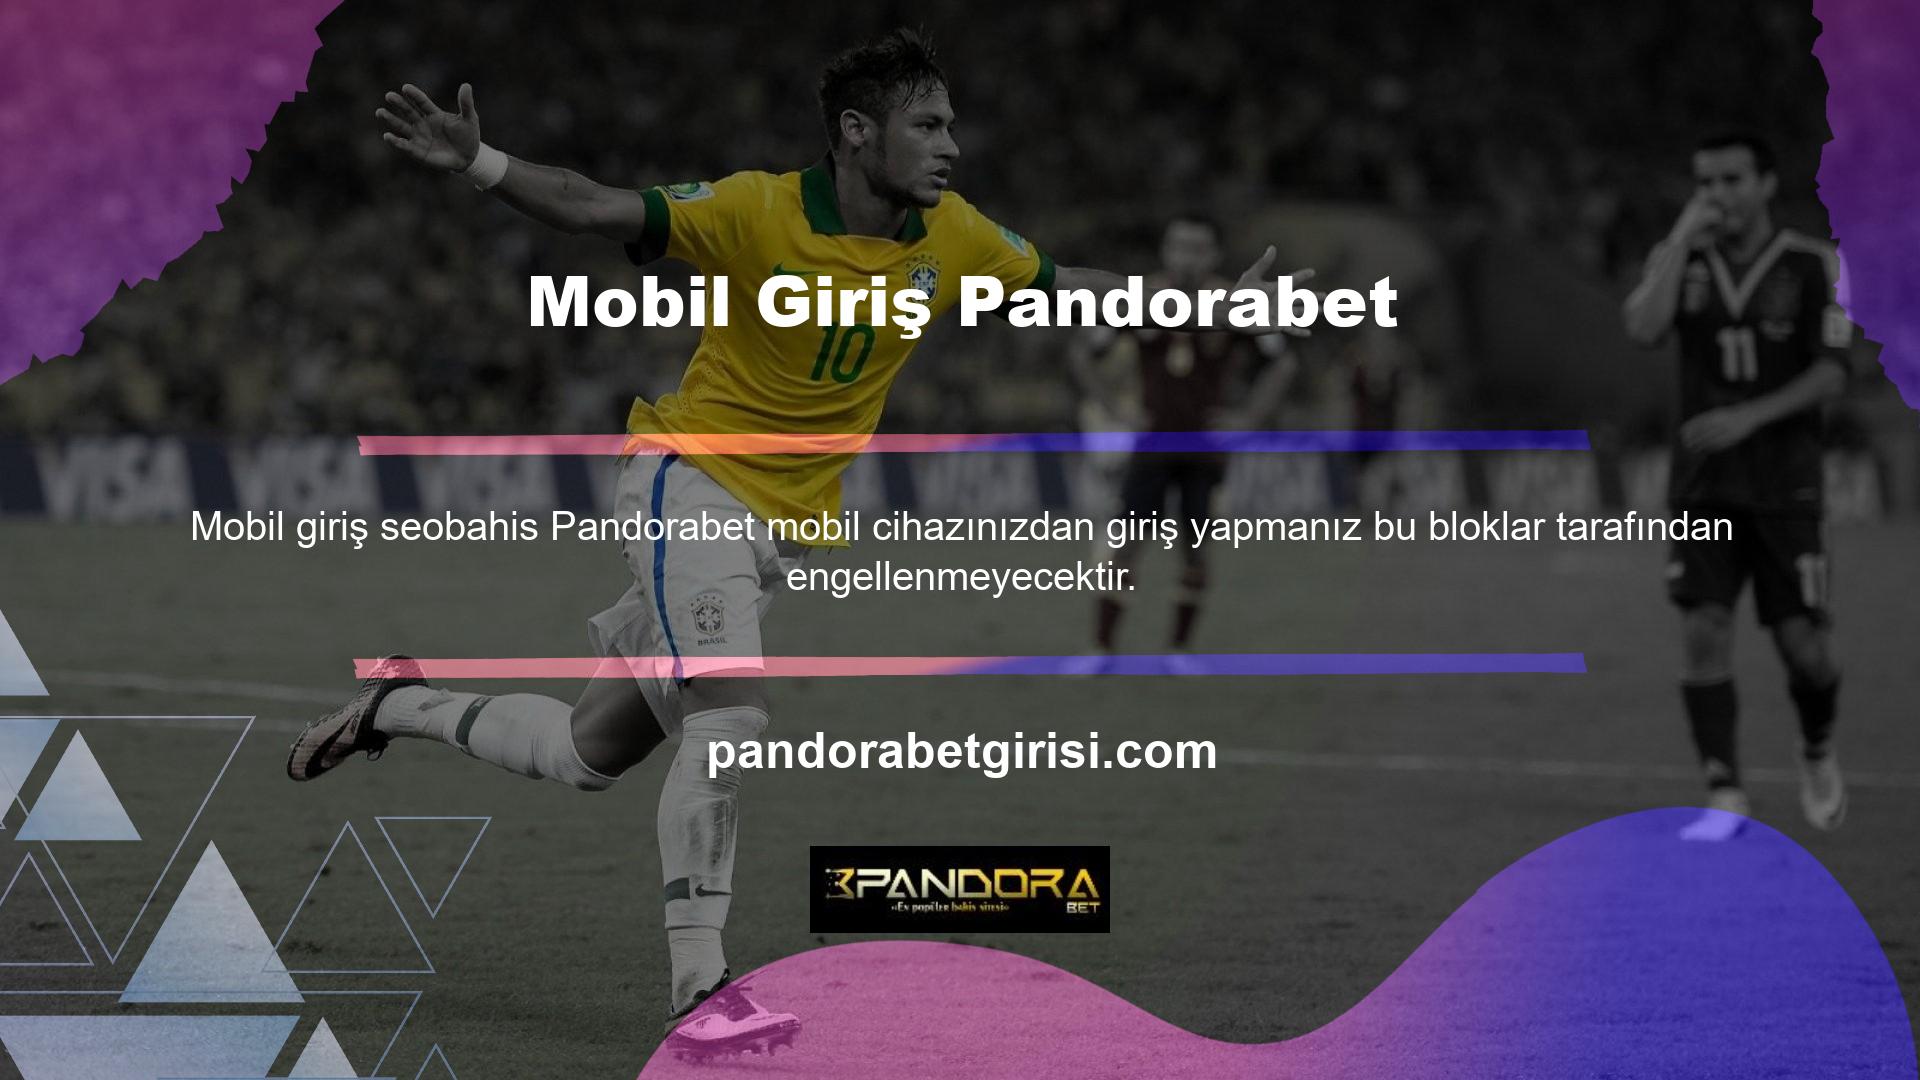 Pandorabet mobil uygulaması da var